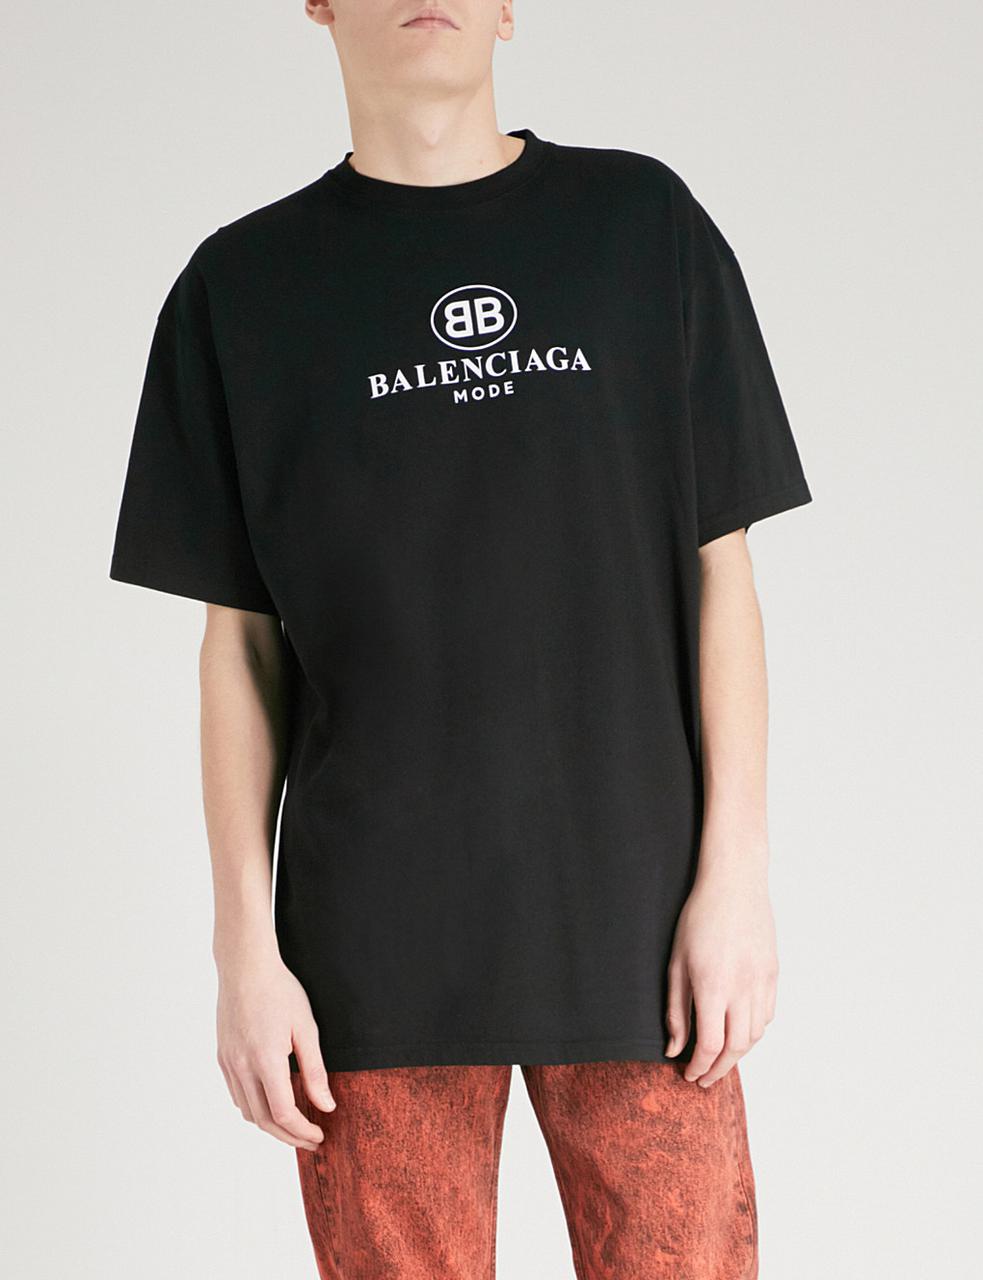 Футболка Balenciaga Mode черная с логотипом, унисекс (мужская, женская: 279  грн. - Робочий спецодяг Київ на BESPLATKA.ua 68425295